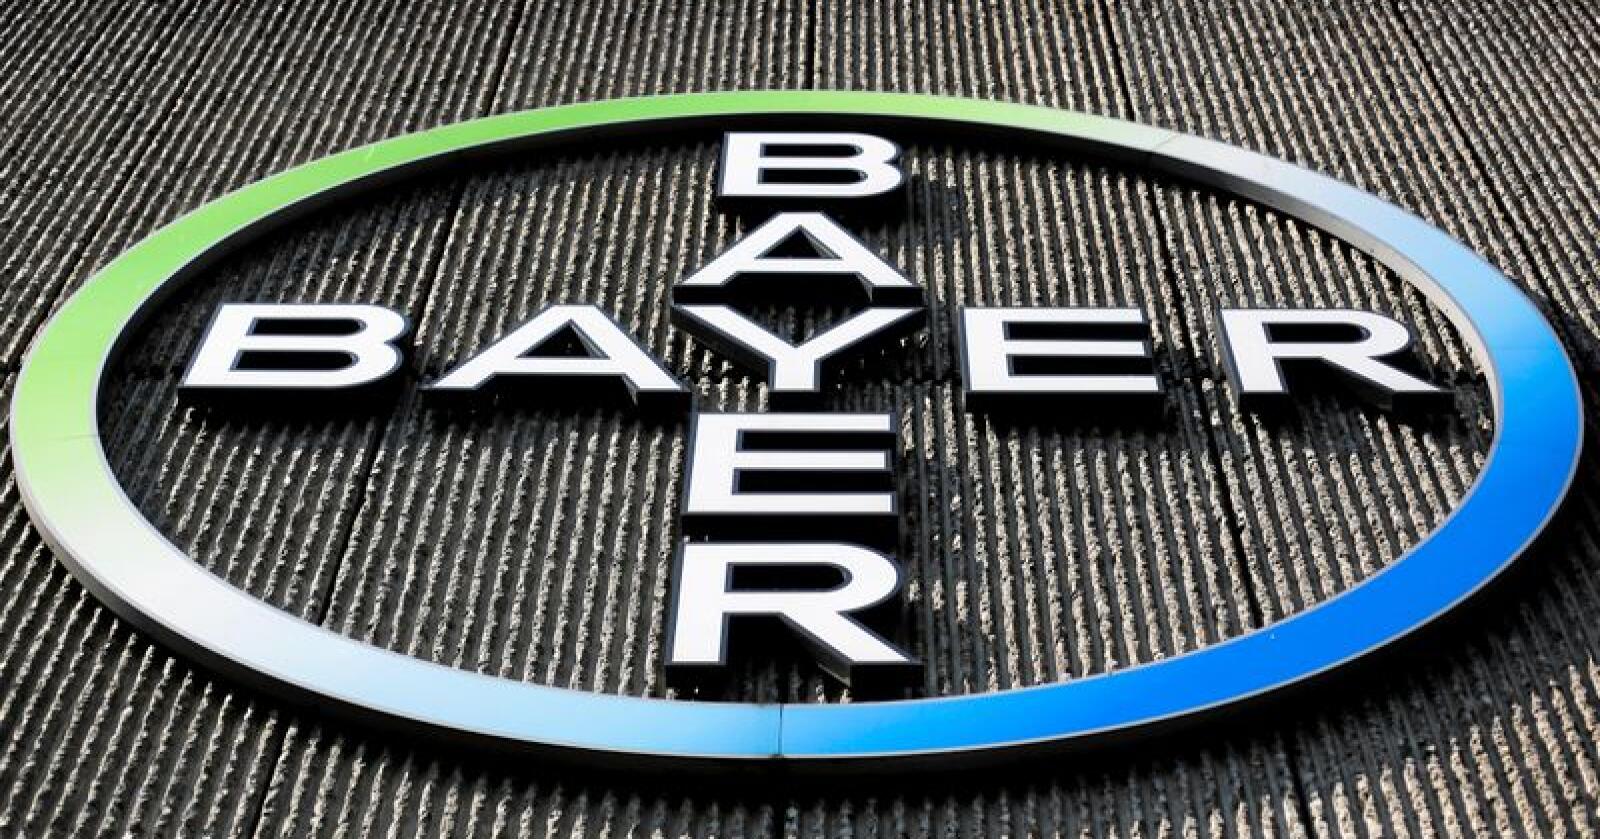 Legemiddelgiganten Bayer planlegger å kutte 12.000 stillinger på verdensbasis. Foto: arkus Schreiber / AP Photo